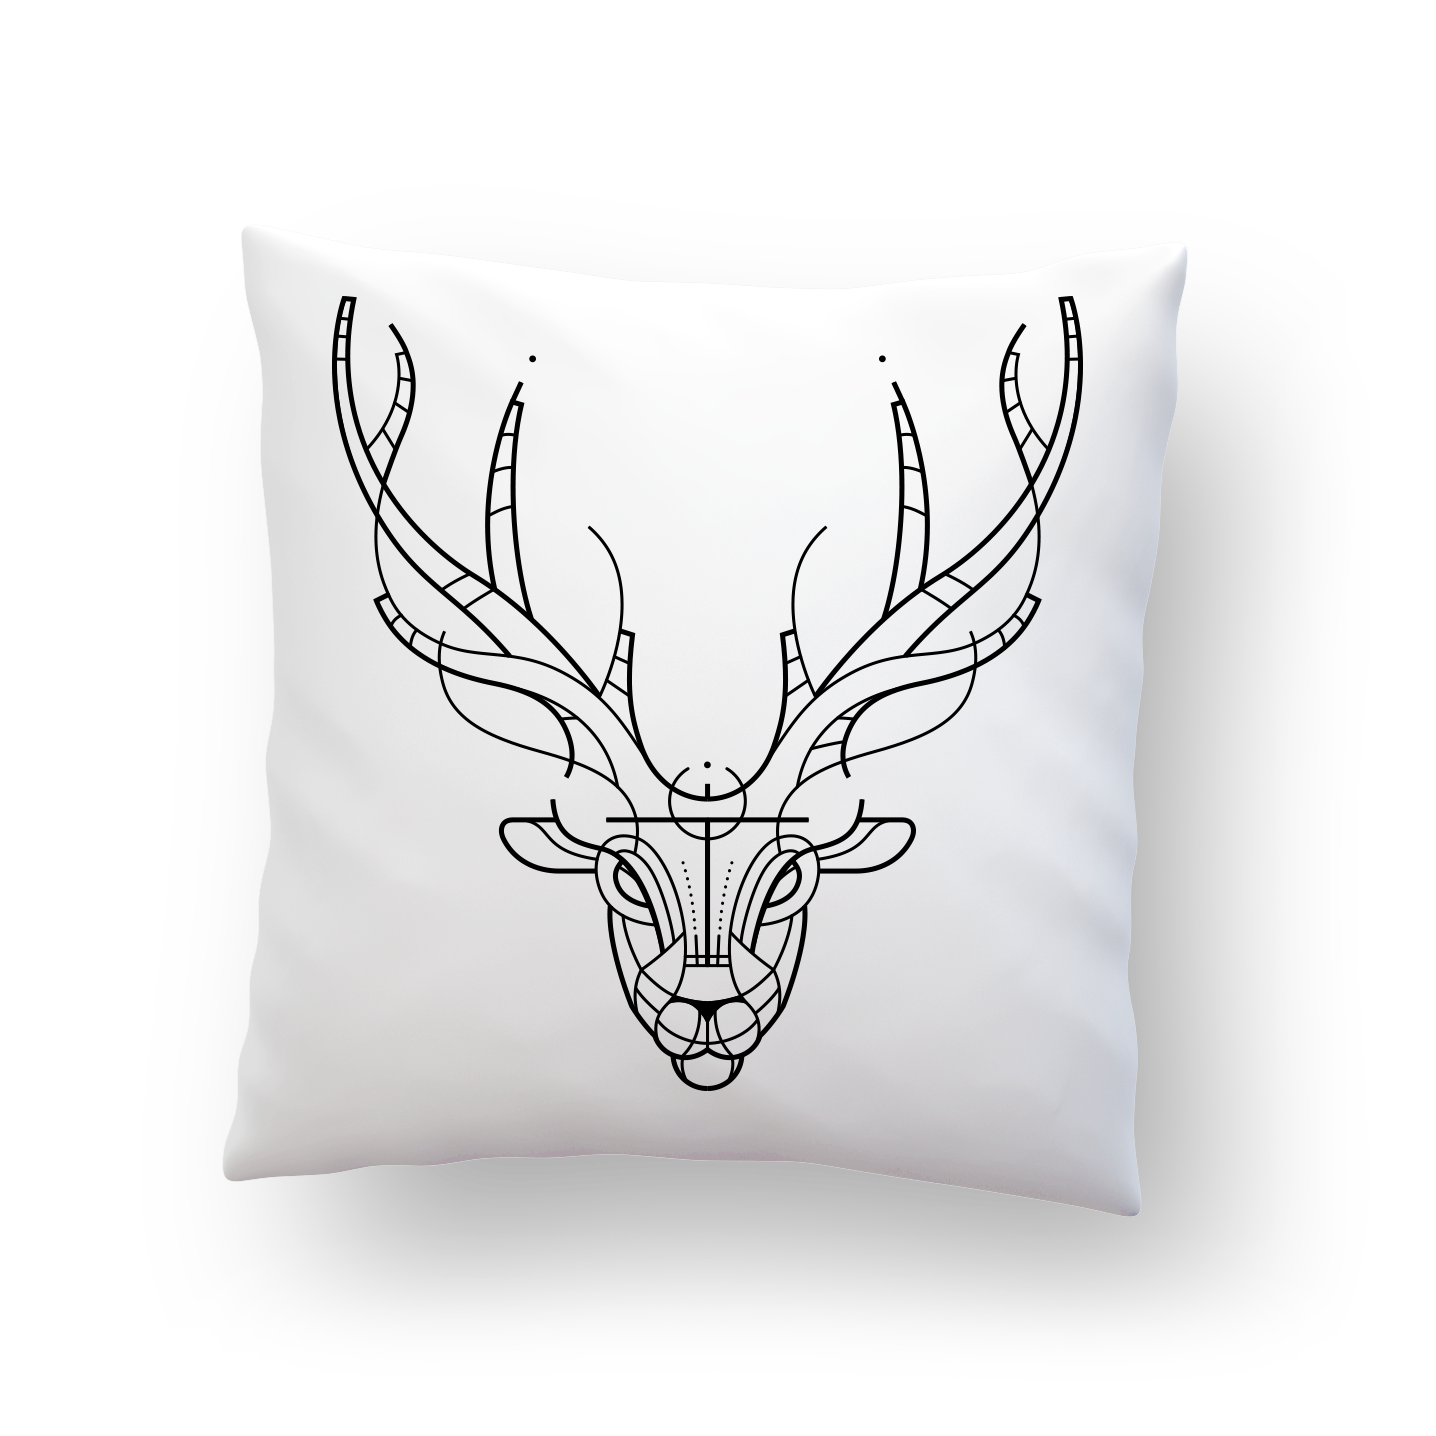 Pillow - Deer head